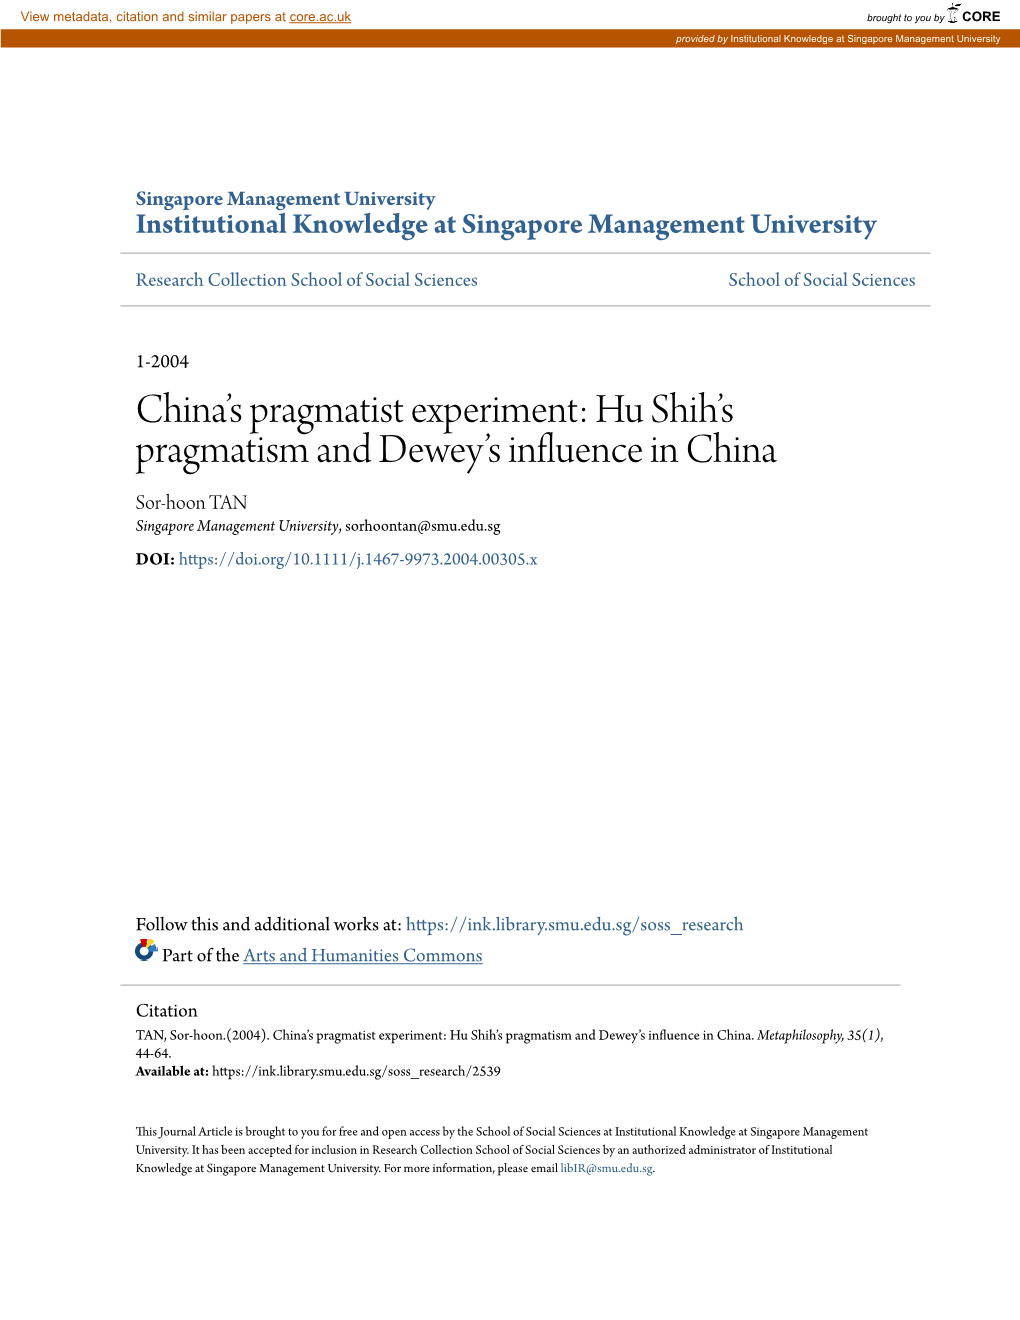 China's Pragmatist Experiment: Hu Shih's Pragmatism and Dewey's Influence in China